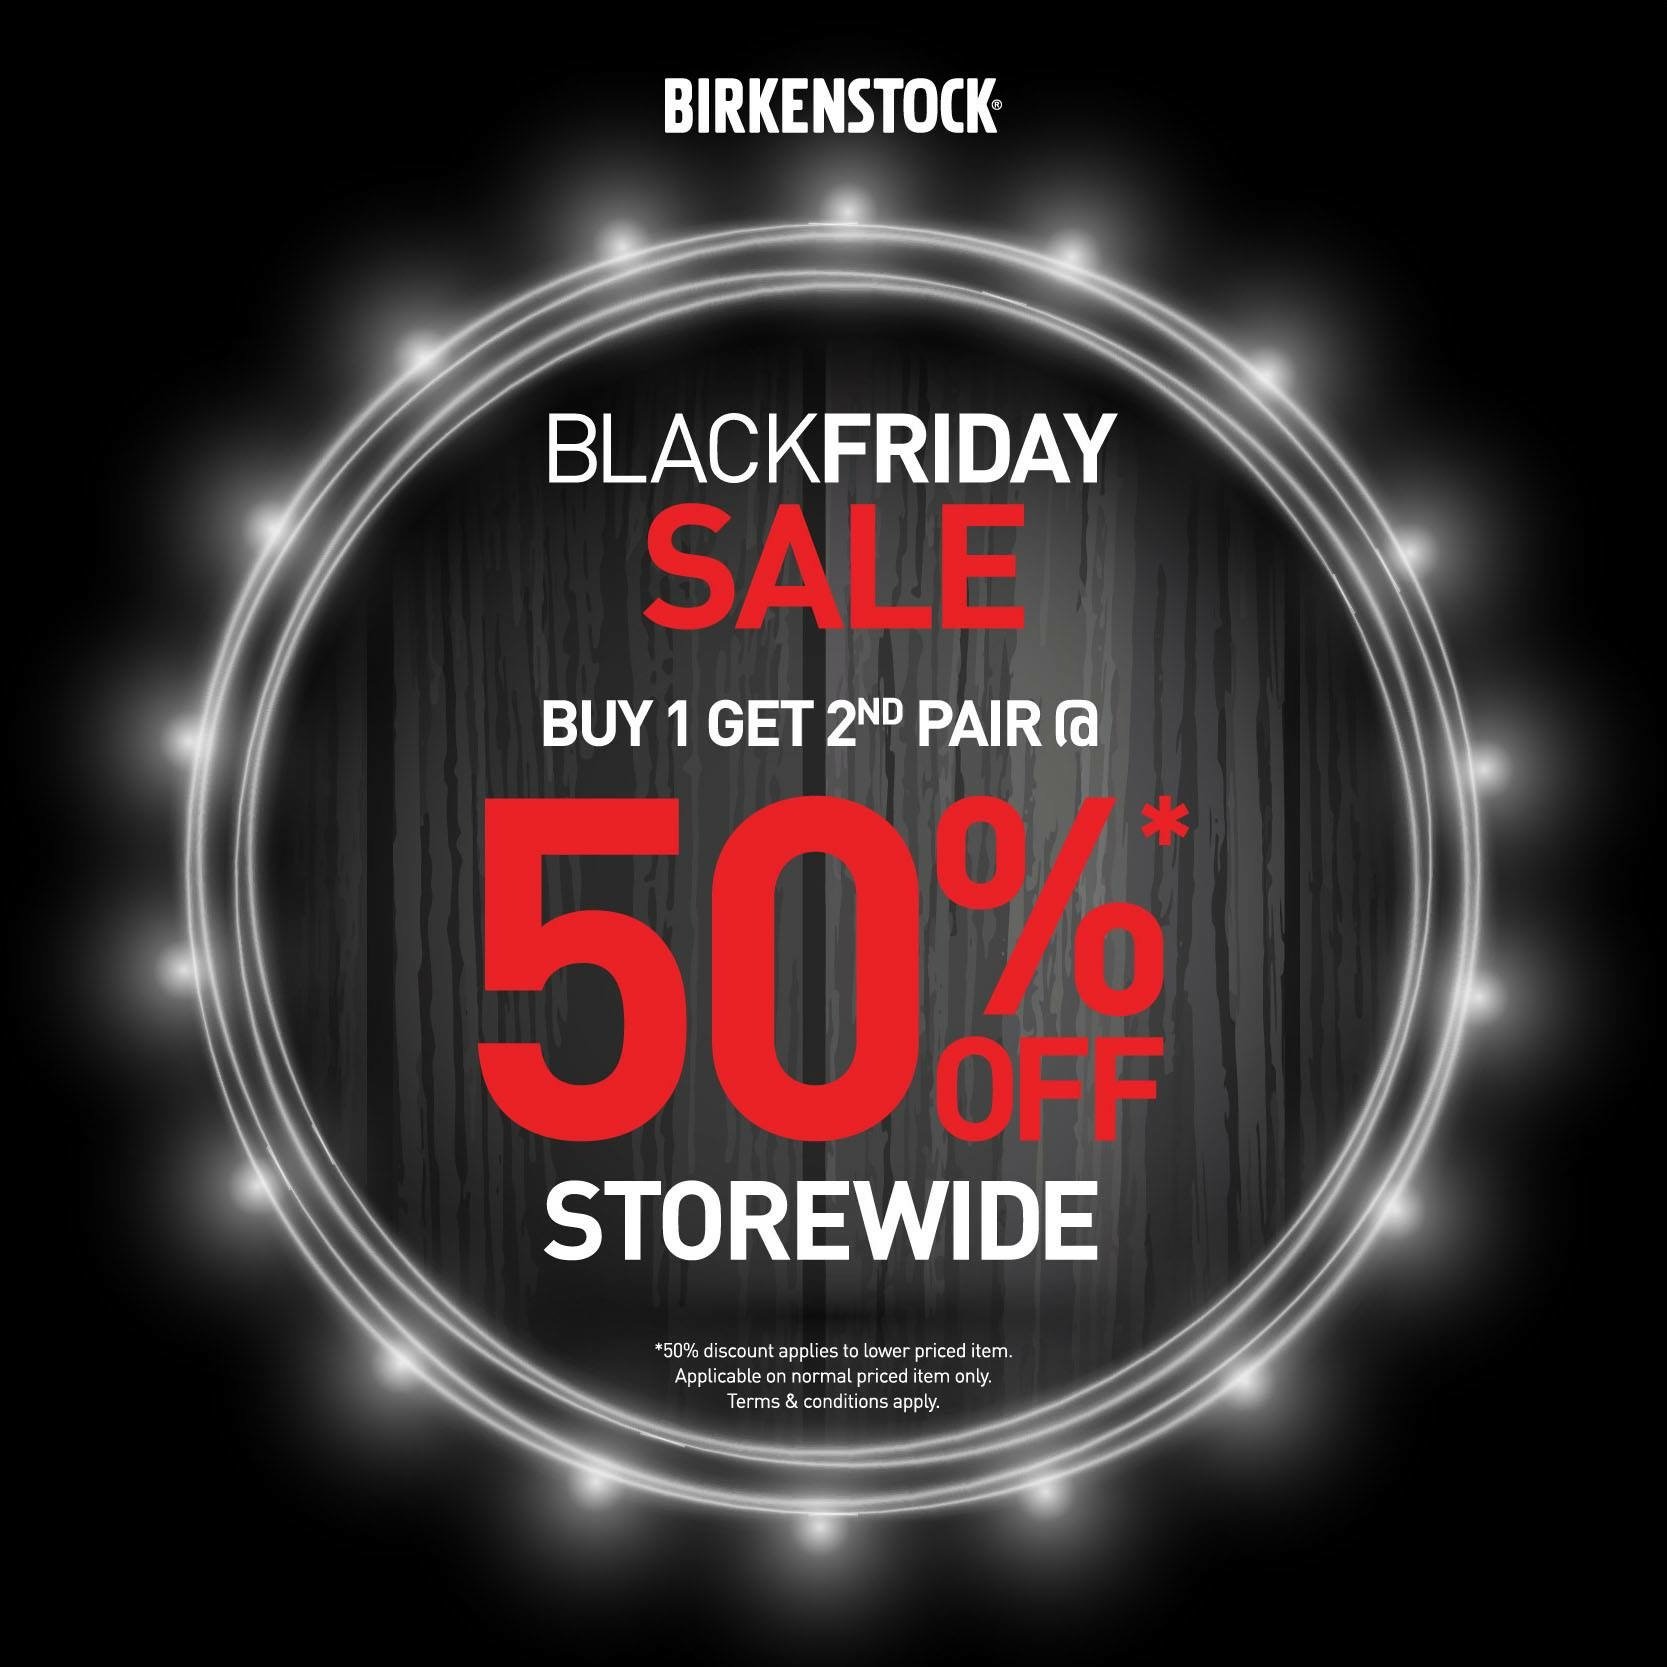 birkenstocks black friday deals